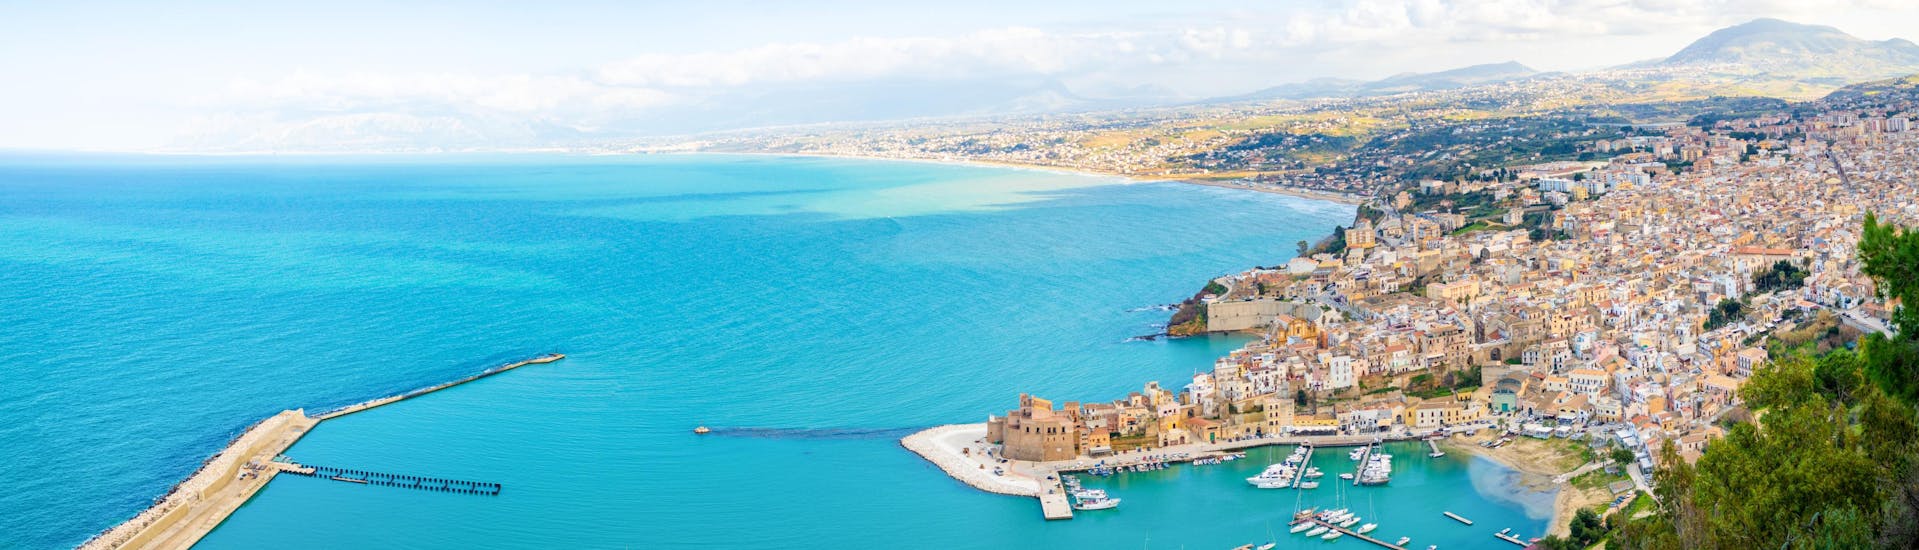 Vista aerea di Castellammare del Golfo, un punto di partenza per le gite in barca in Sicilia.